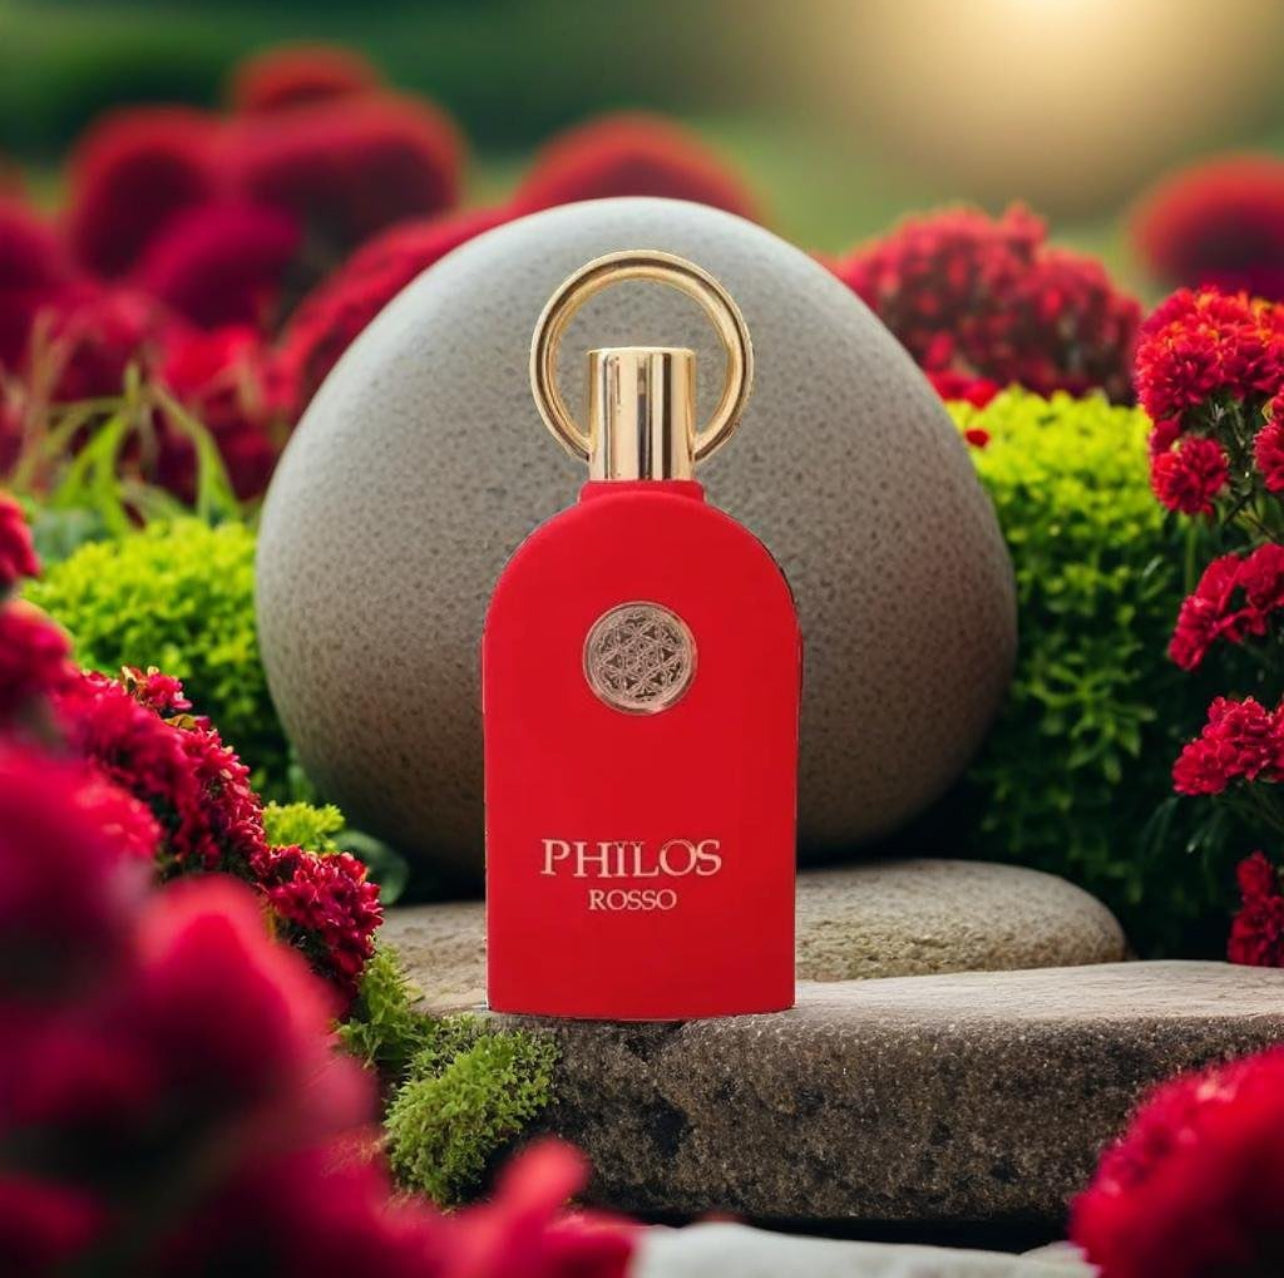 Philos rosso como bacarat 540 (Perfum árabe UNISEX)